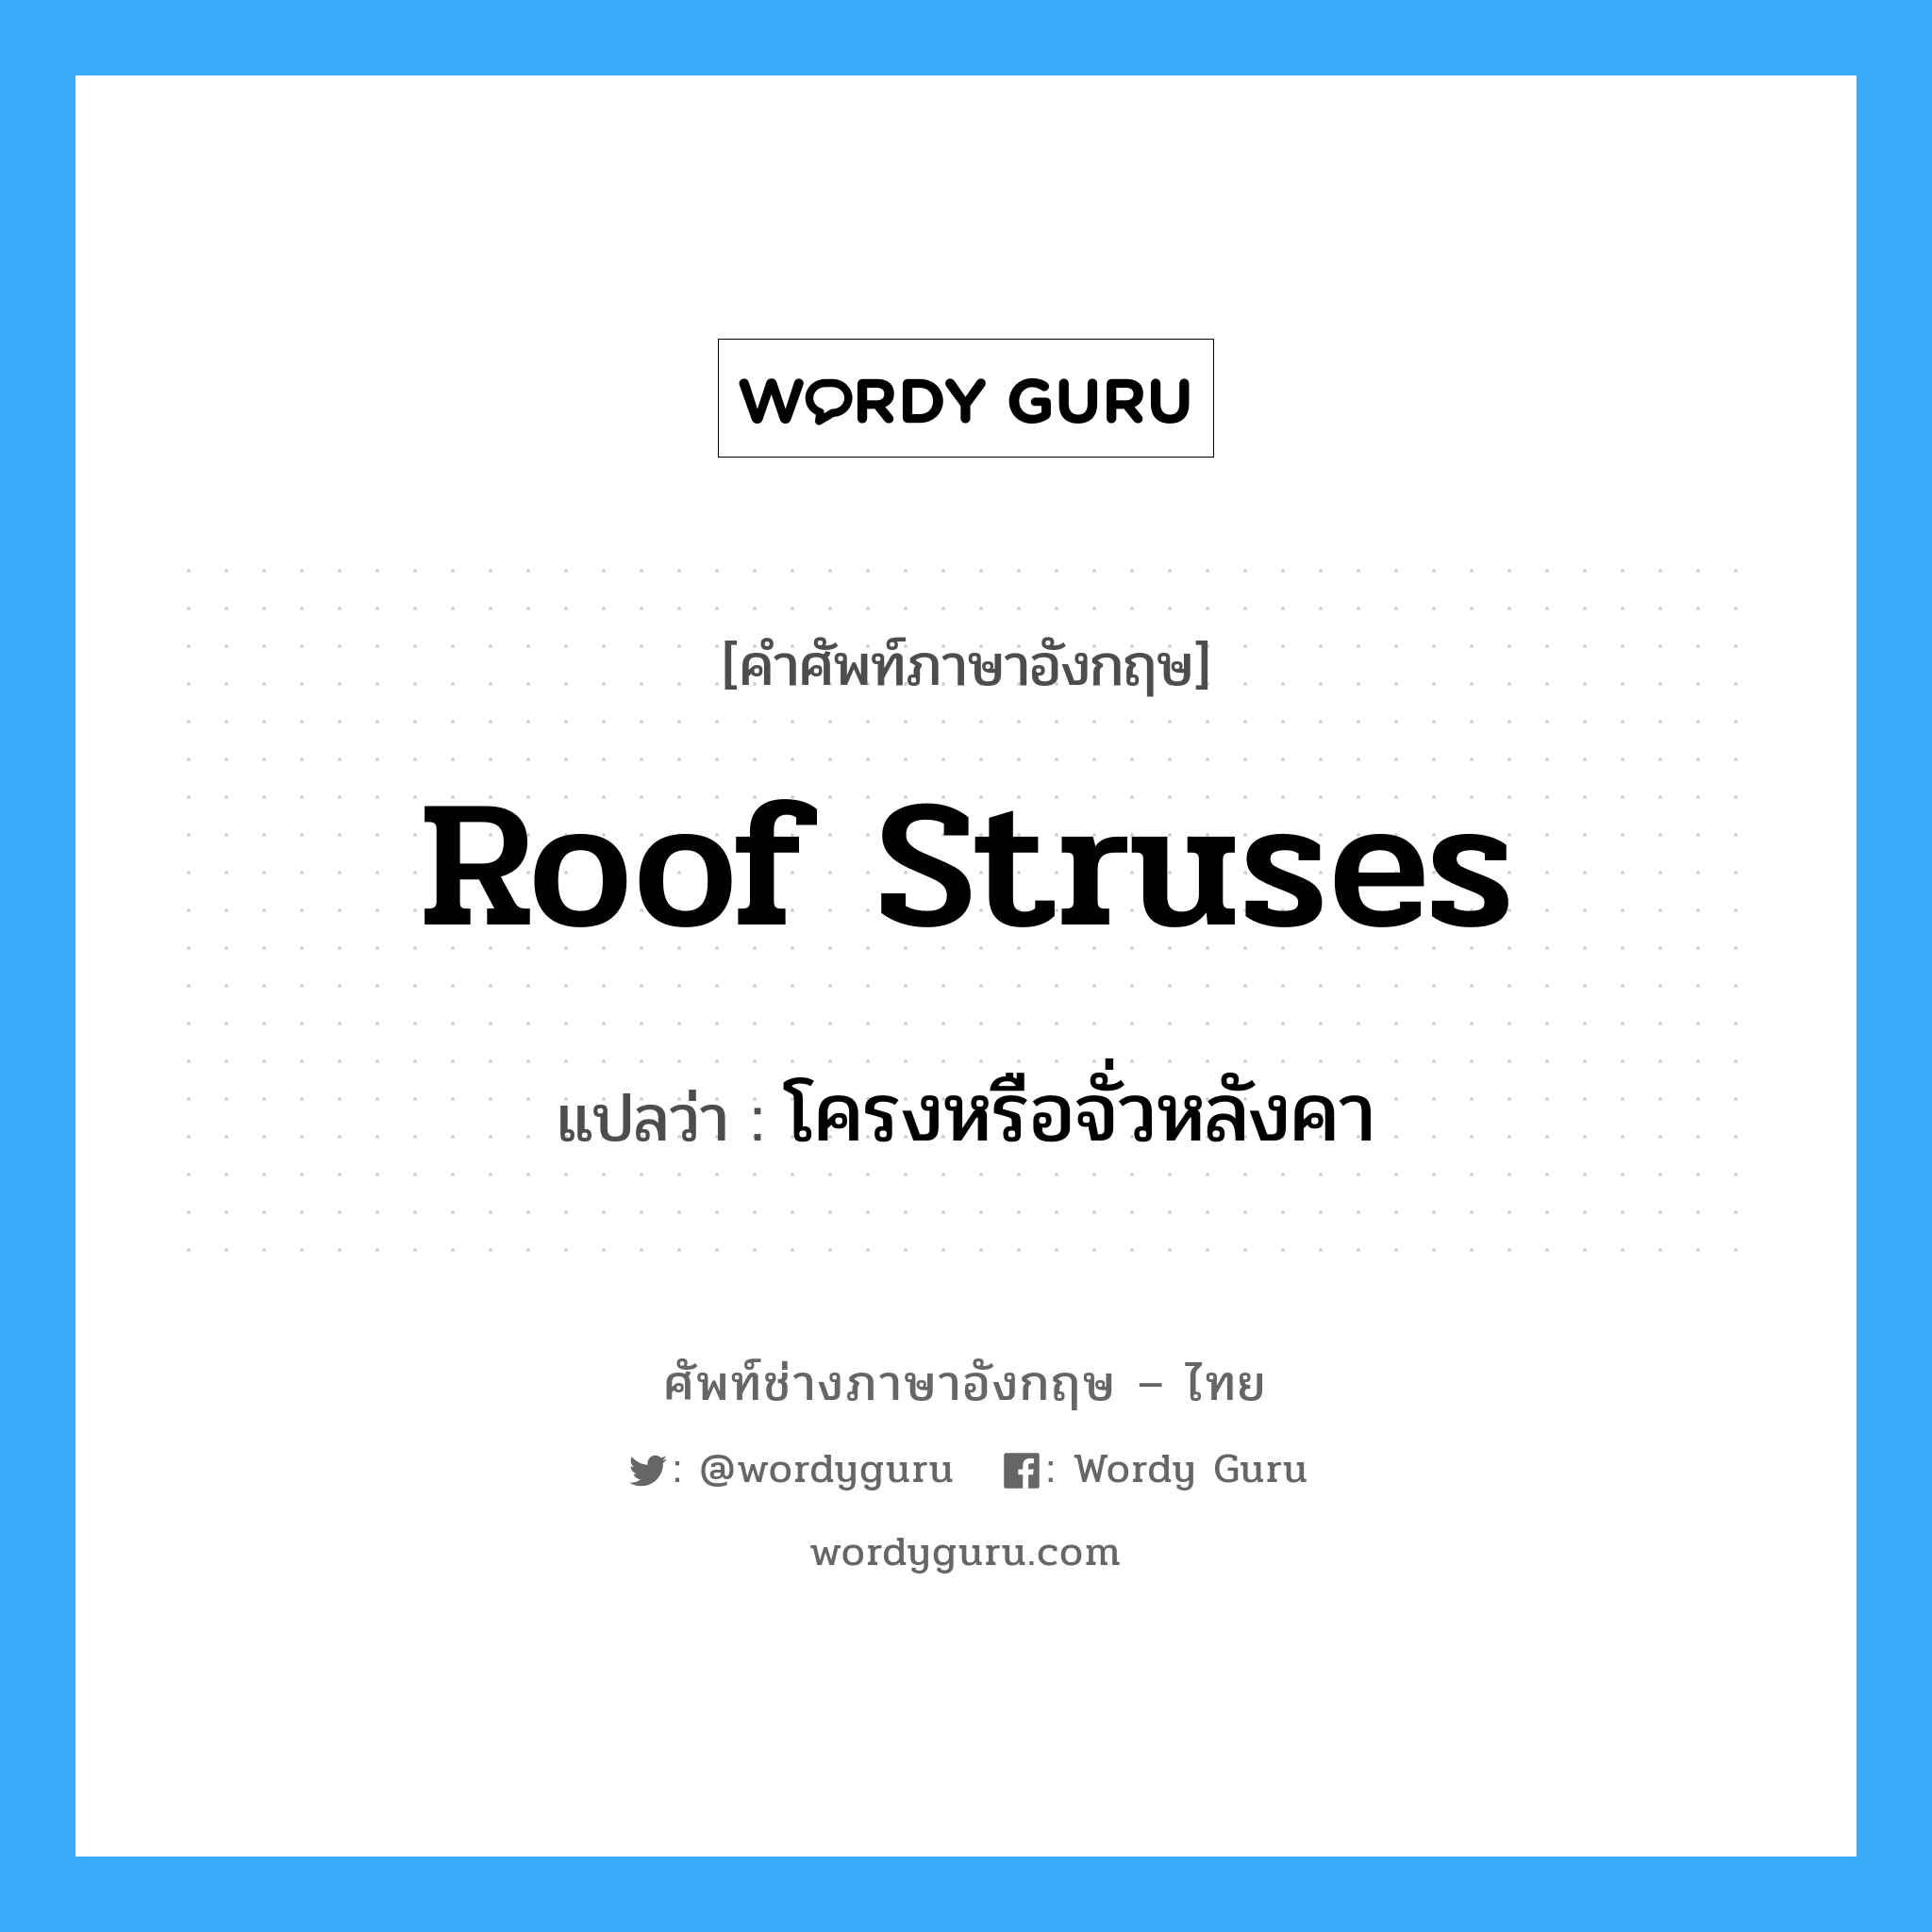 roof struses แปลว่า?, คำศัพท์ช่างภาษาอังกฤษ - ไทย roof struses คำศัพท์ภาษาอังกฤษ roof struses แปลว่า โครงหรือจั่วหลังคา